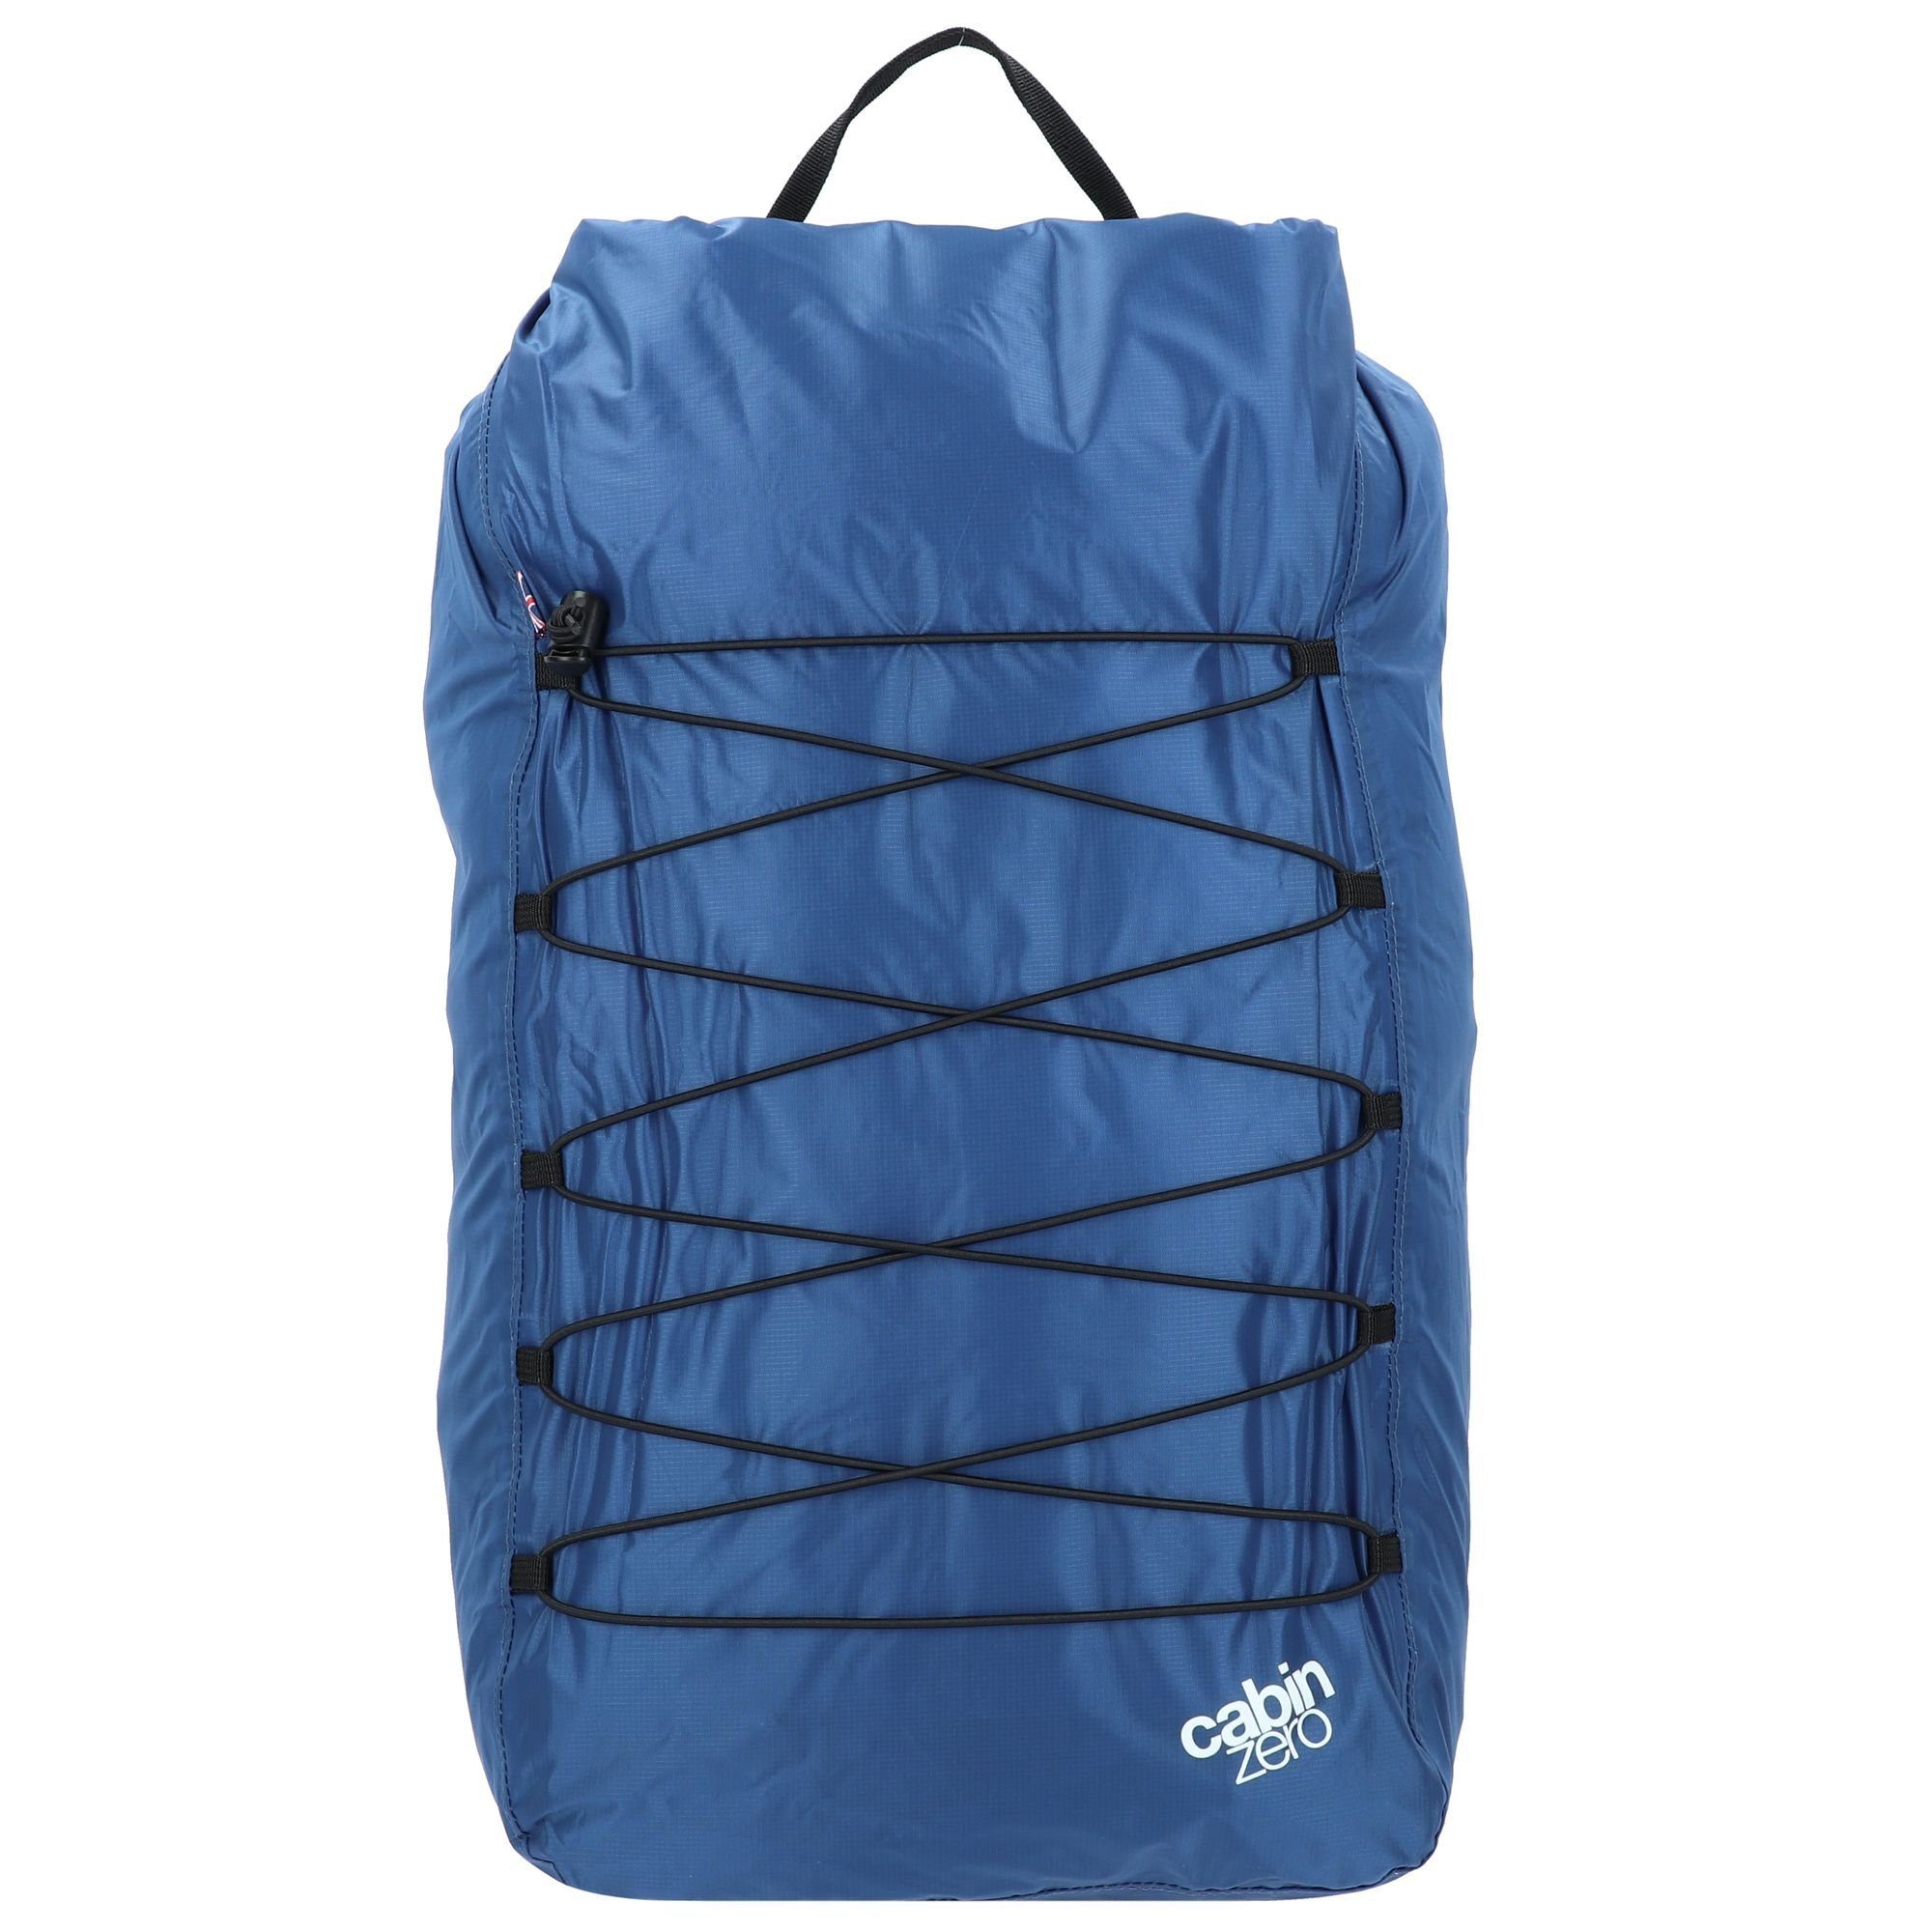 Cabinzero Rucksack Companion Bags, Nylon atlantic blue